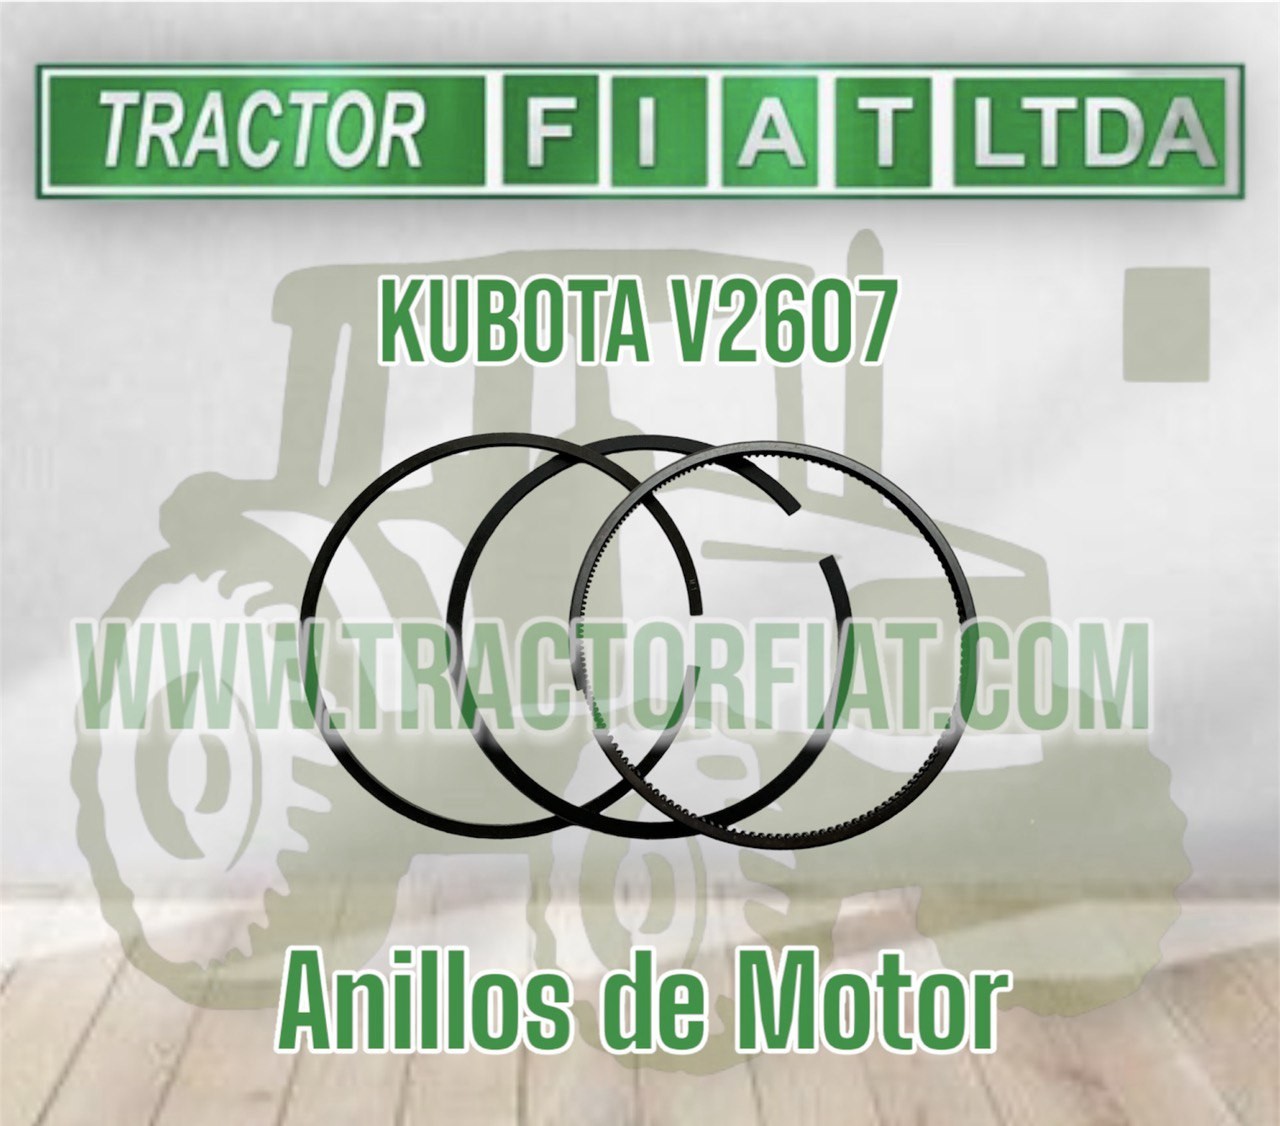 ANILLOS DE MOTOR KUBOTA V2607